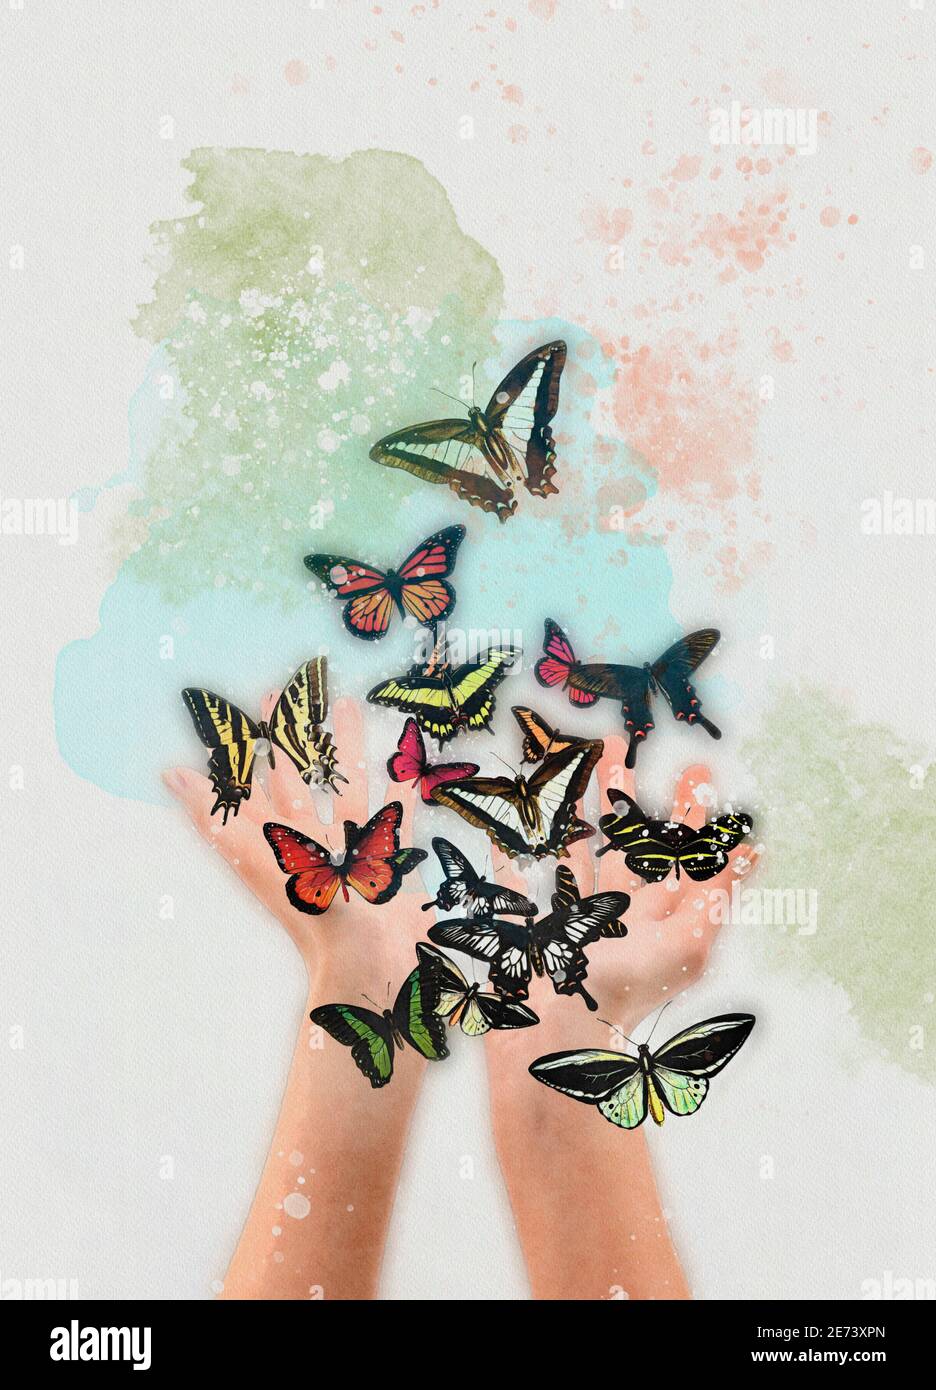 Mains libérant des papillons, illustration Banque D'Images